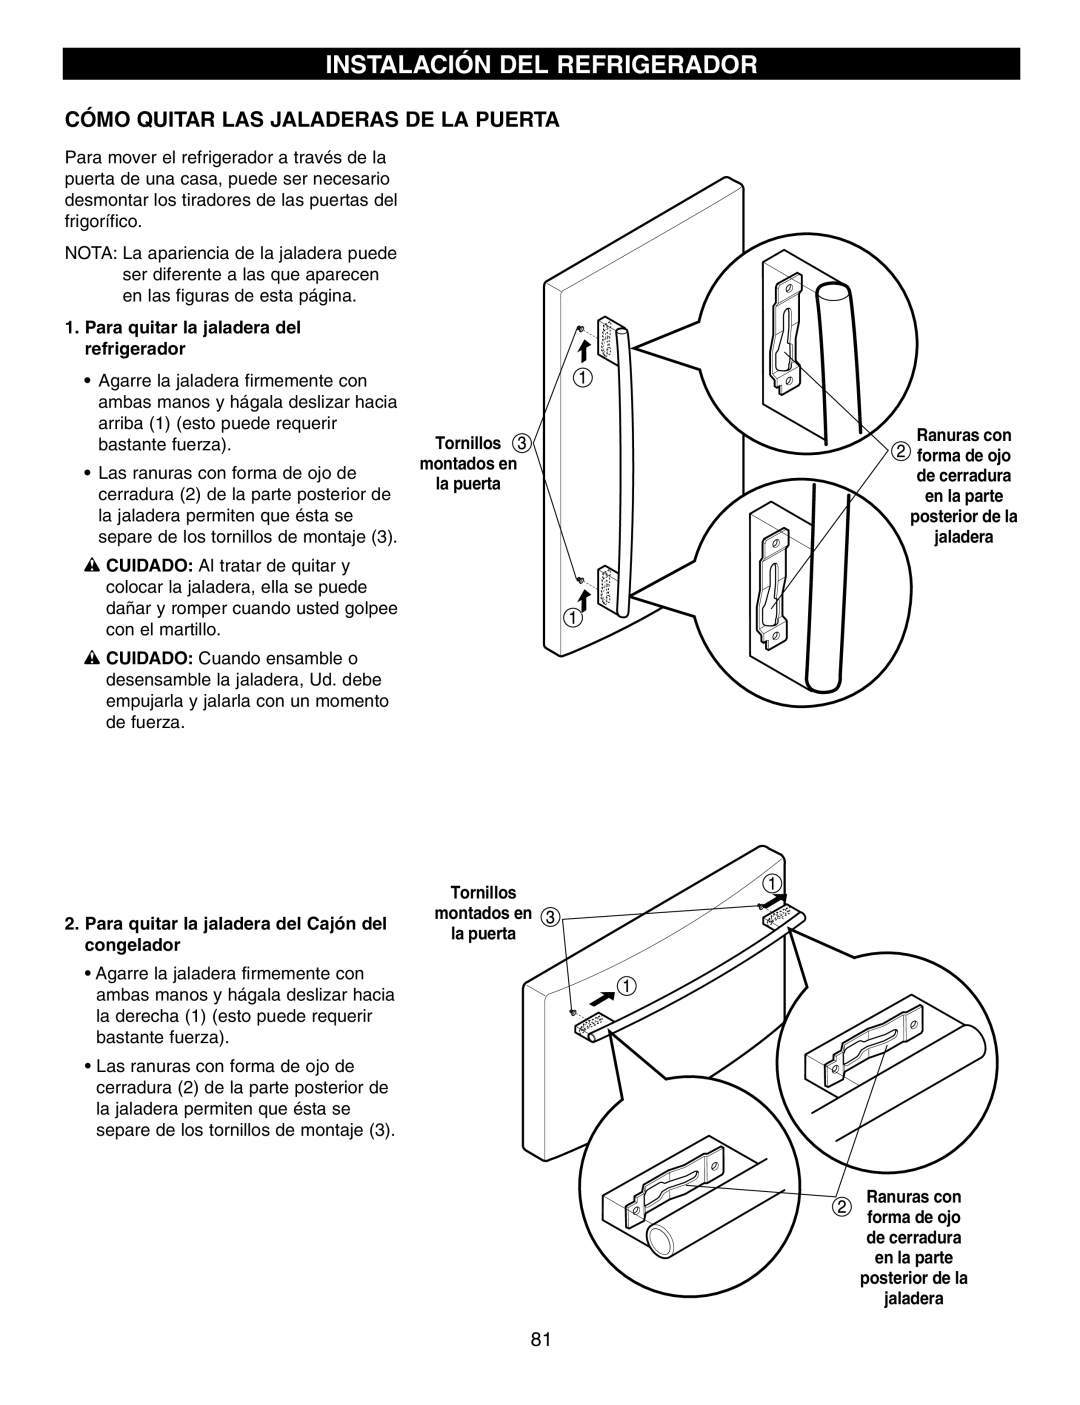 LG Electronics LFX25960 manual Instalación Del Refrigerador, Cómo Quitar Las Jaladeras De La Puerta, montados en, la puerta 